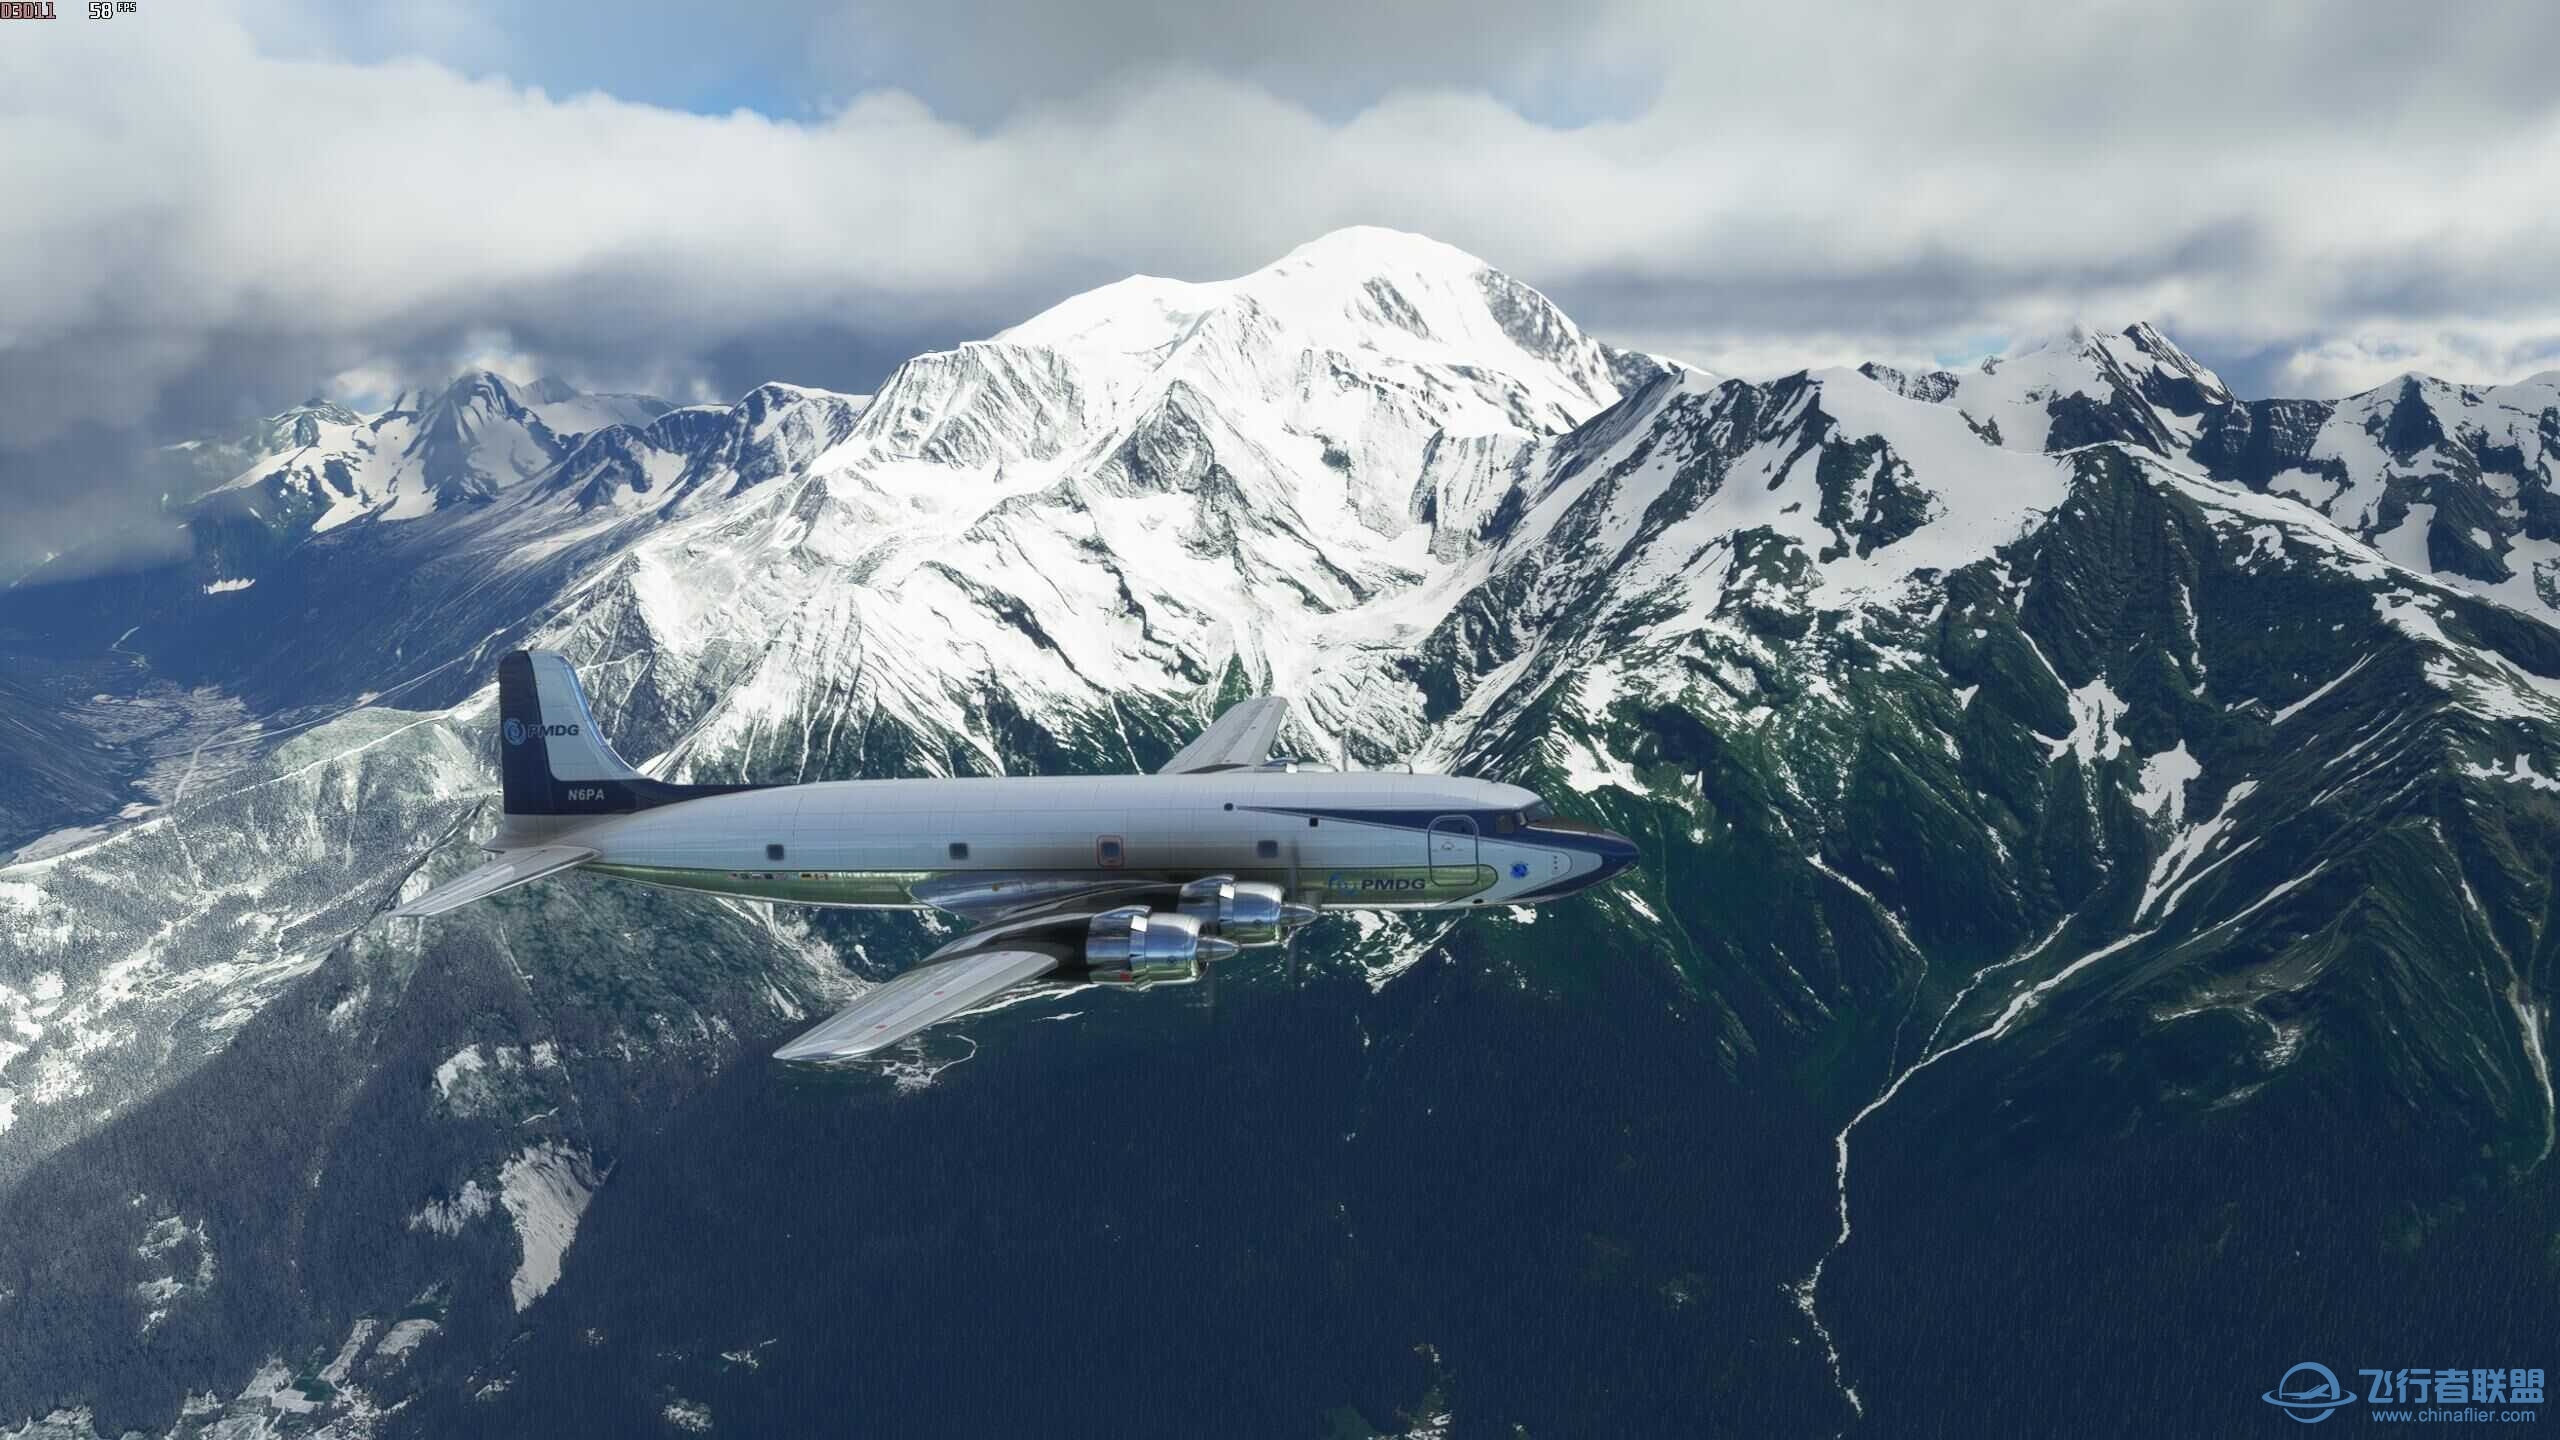 xplane11和微软模拟飞行2020哪个体验感好？-5429 